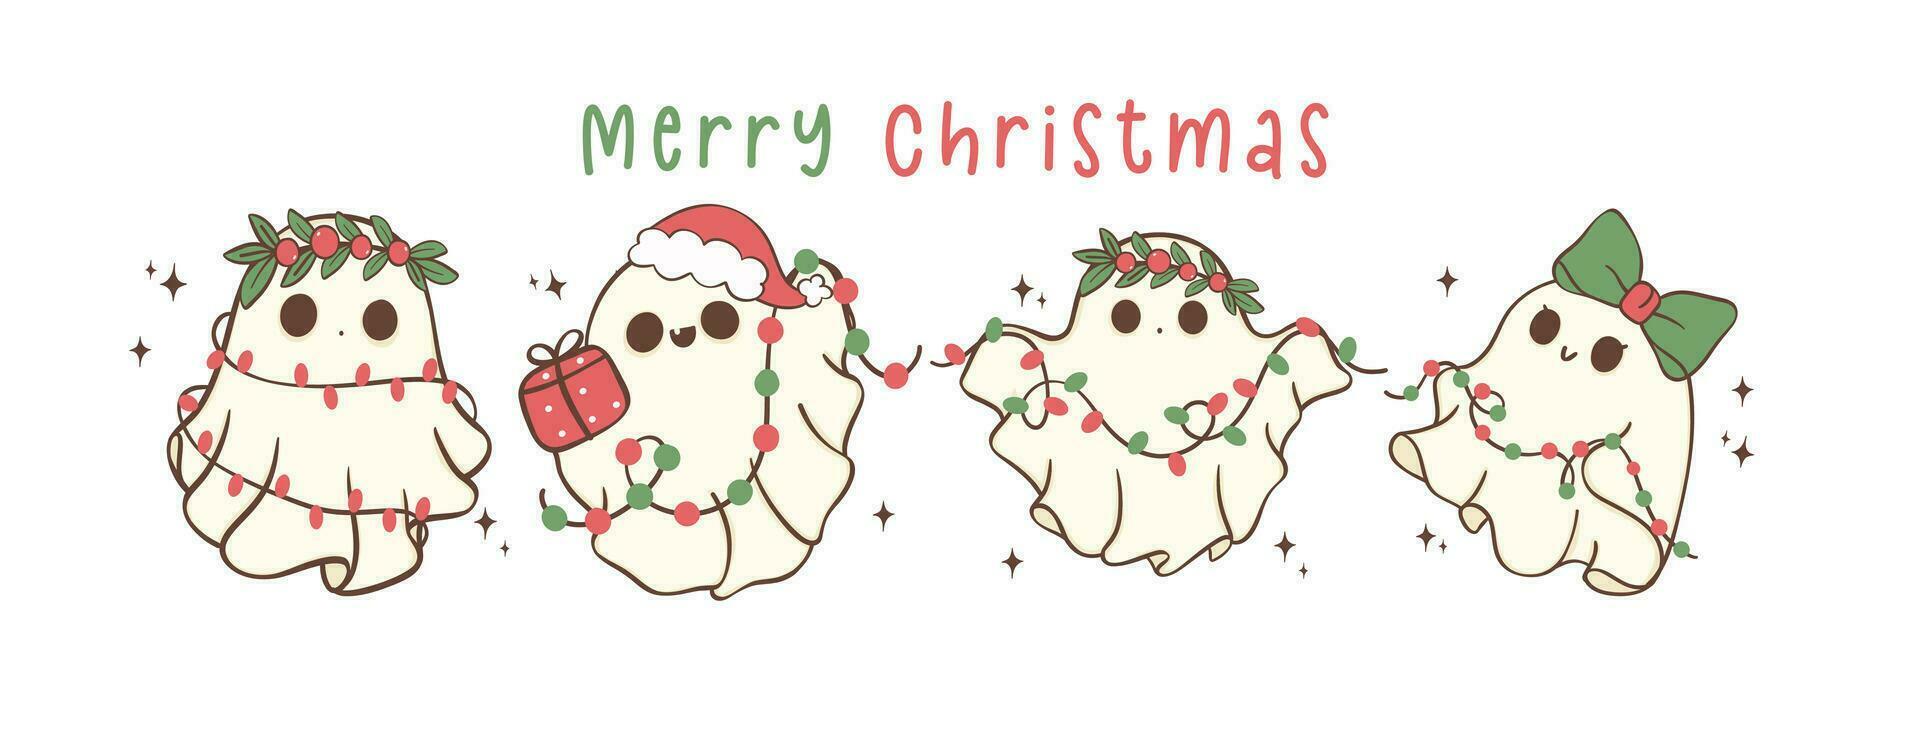 grupo de linda y kawaii Navidad fantasmas con luces. festivo saludo tarjeta bandera, fiesta dibujos animados mano dibujo con adorable pose. vector